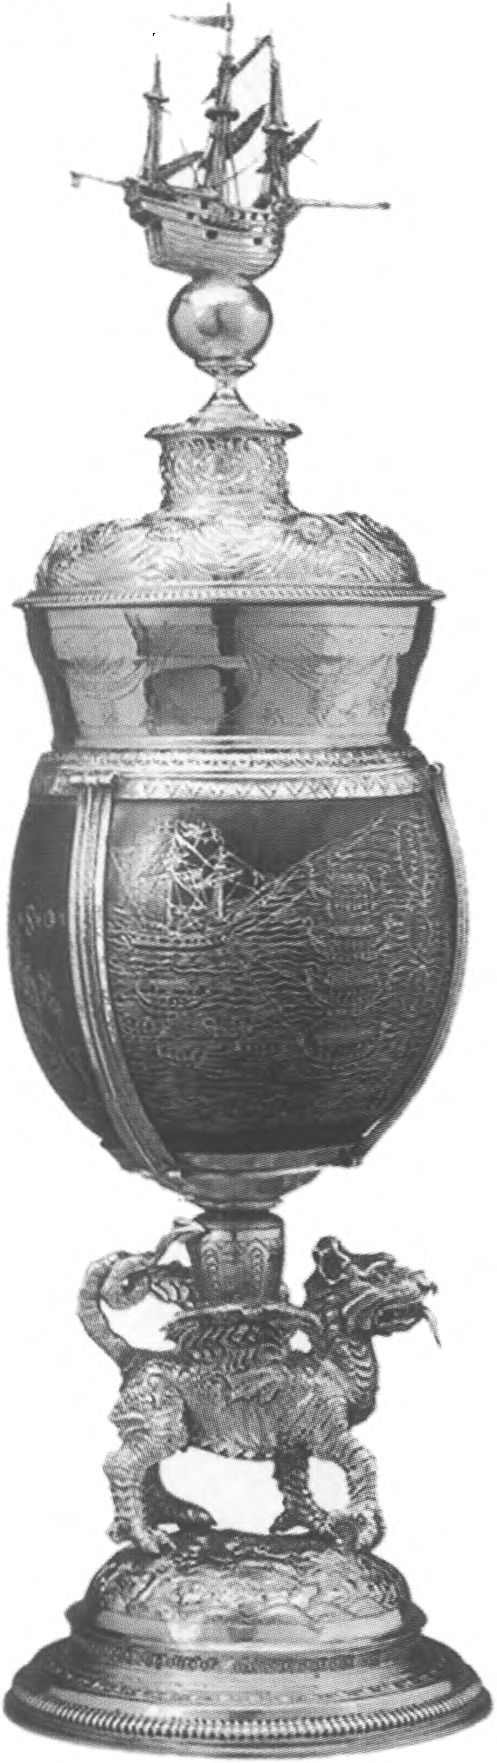 Кубок из кокосового ореха, украшенный изображением корабля и гербами Елизаветы I и Фрэнсиса Дрейка. Принадлежал Дрейку (?). Около 1597 г.